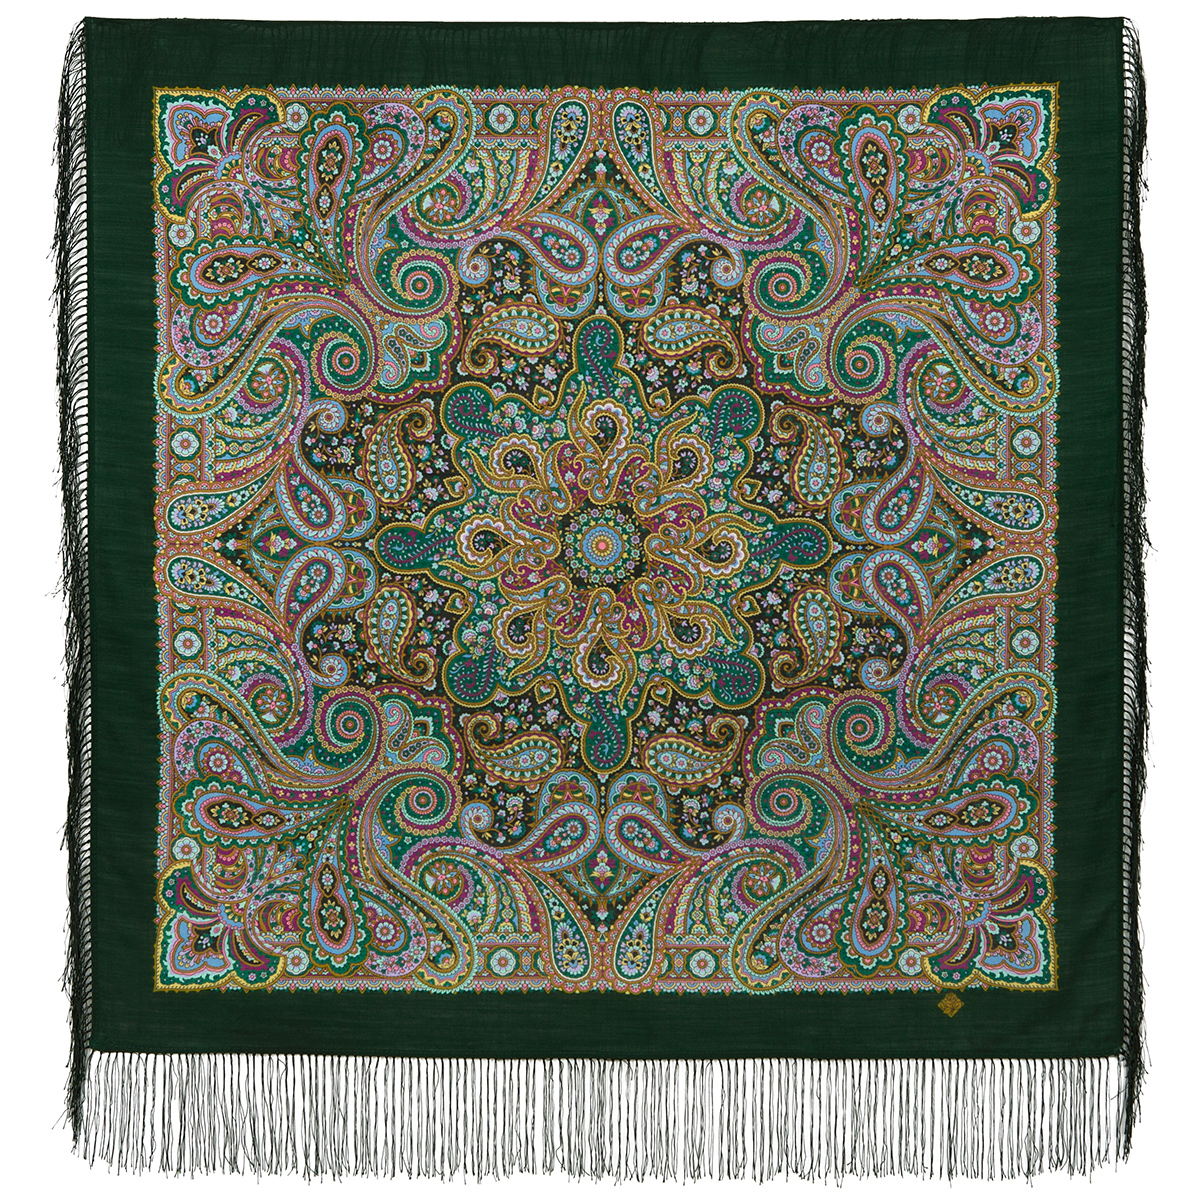 Платок женский Павловопосадский платок 1836 зеленый/фиолетовый, 89x89 см